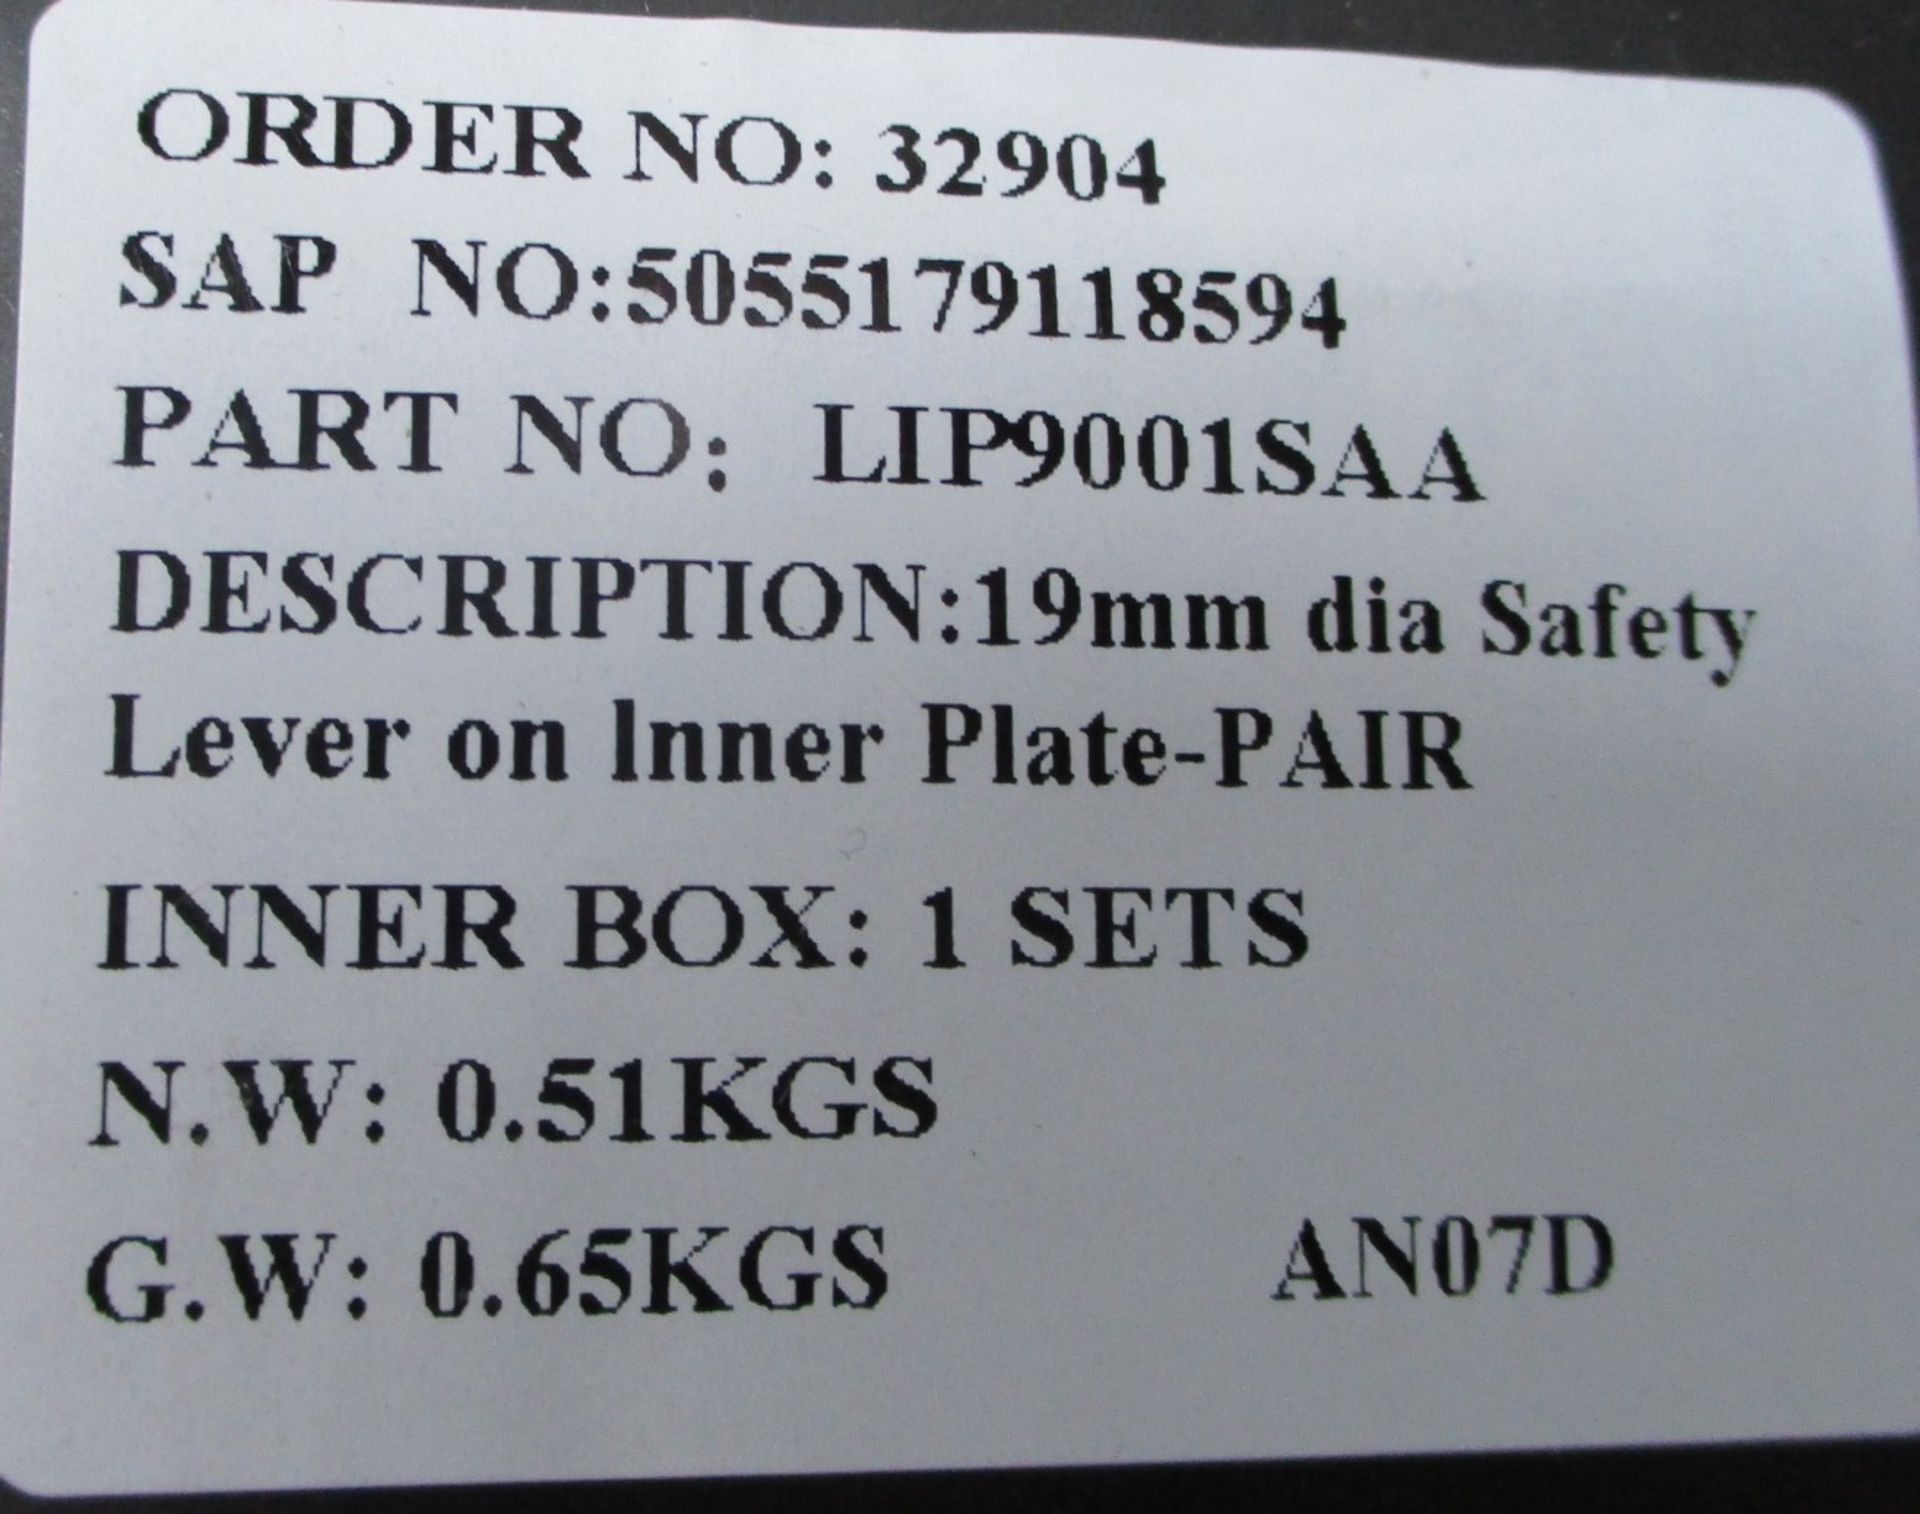 12 x Eurospec Safety Door Handles Plate Handles - Brand New Stock - Product Code: LIP9001SAA - CL538 - Image 4 of 5